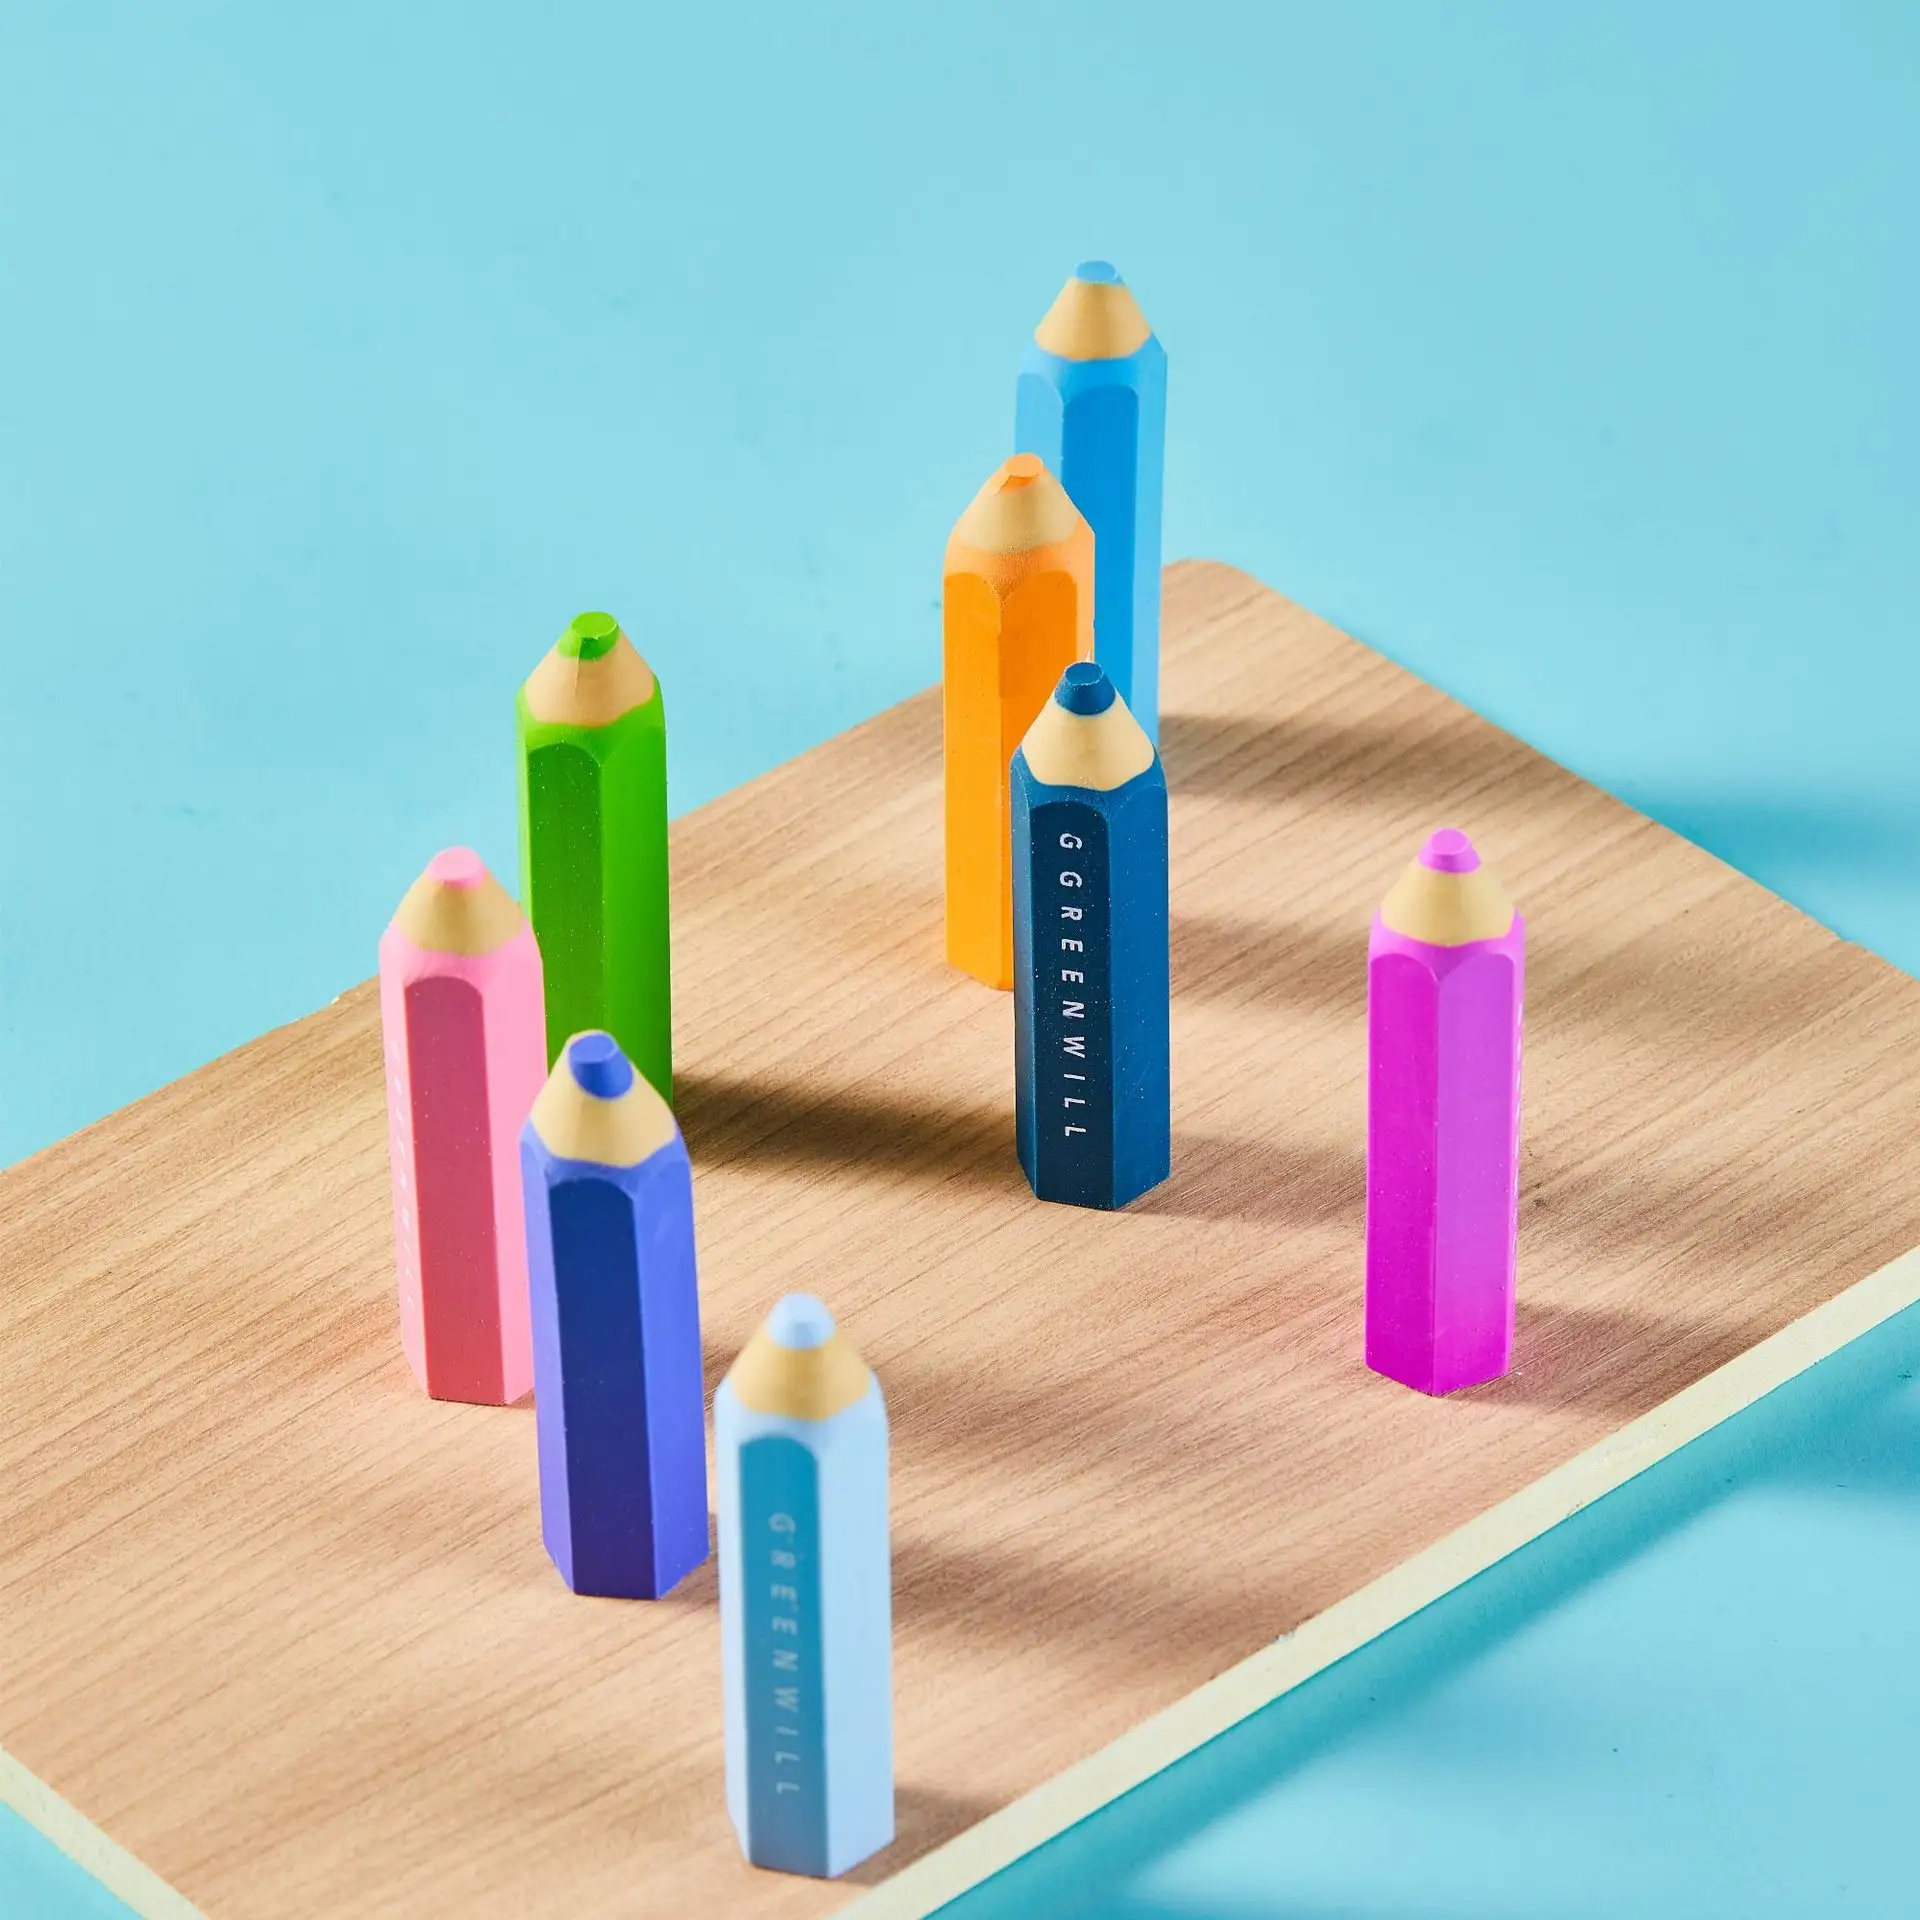 Penghapus pensil kantor khusus warna pelangi, pemodelan pensil heksagonal kreatif untuk lukisan seni siswa